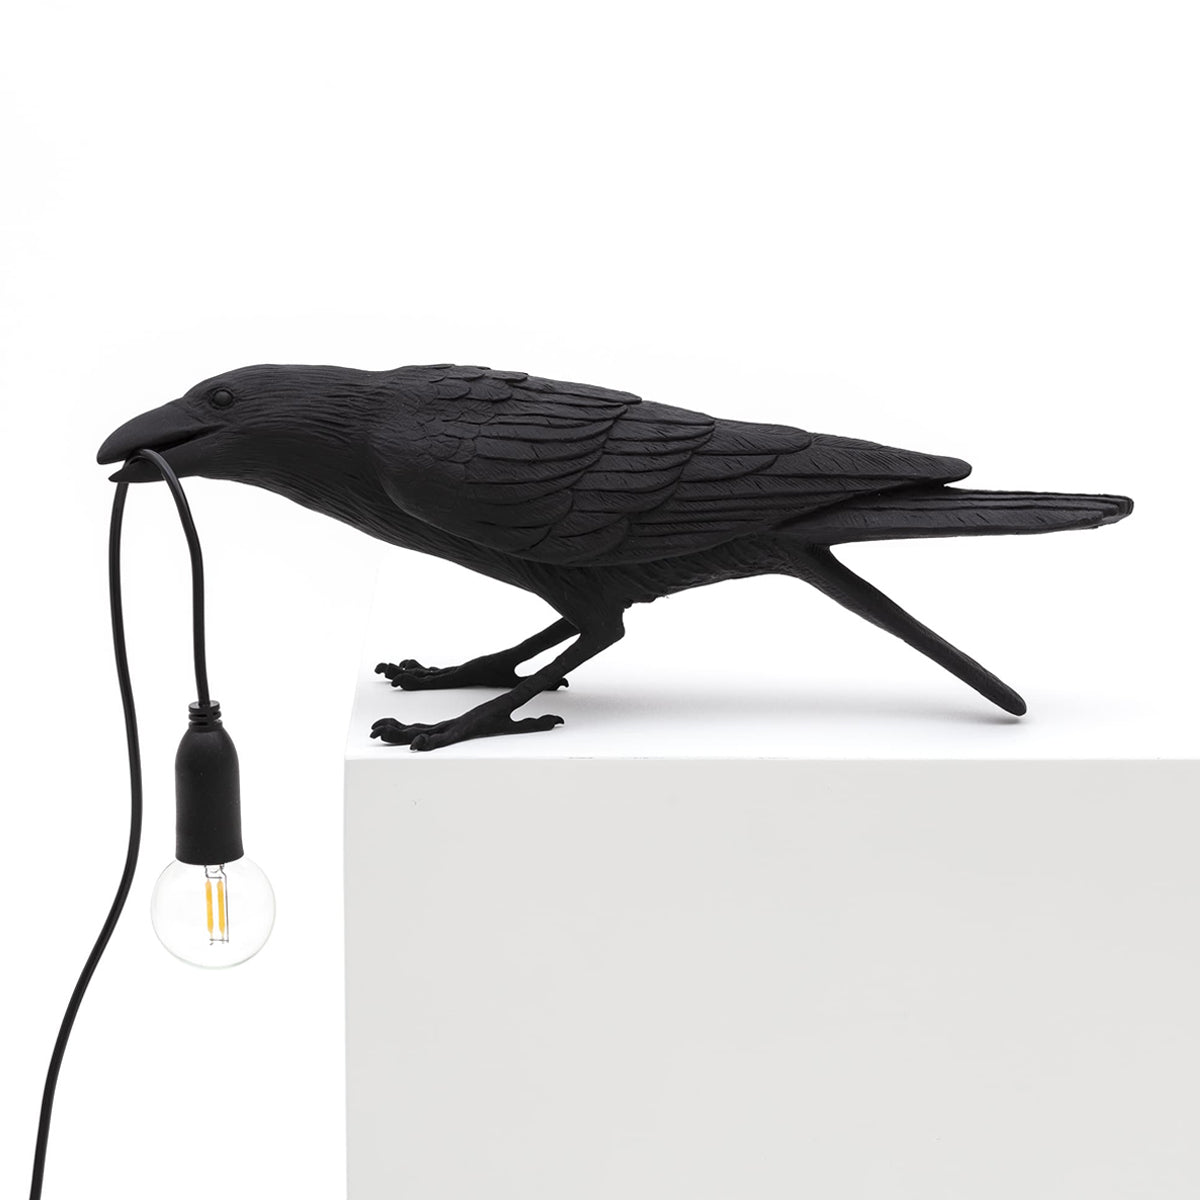 Bird Lamp Black Playing - Seletti